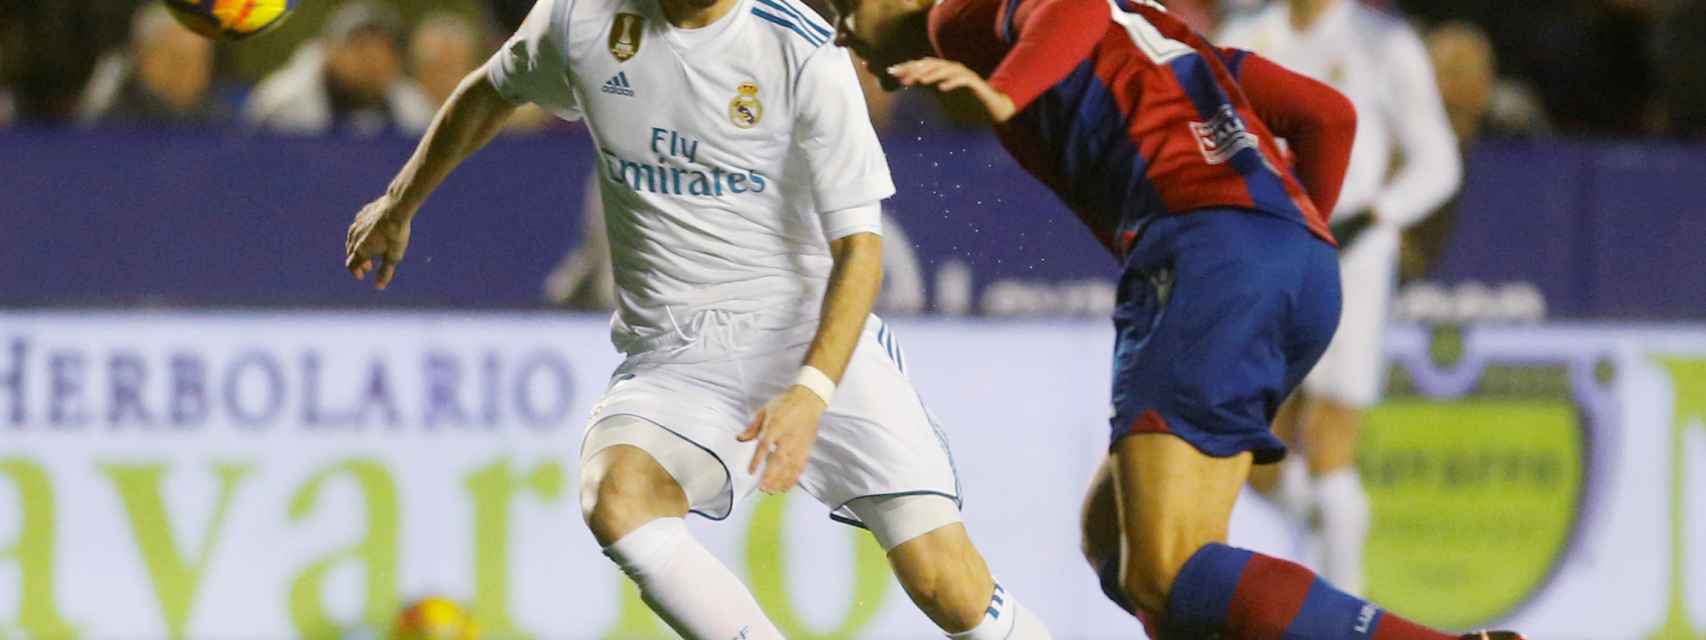 Benzema en el Levante - Real Madrid.